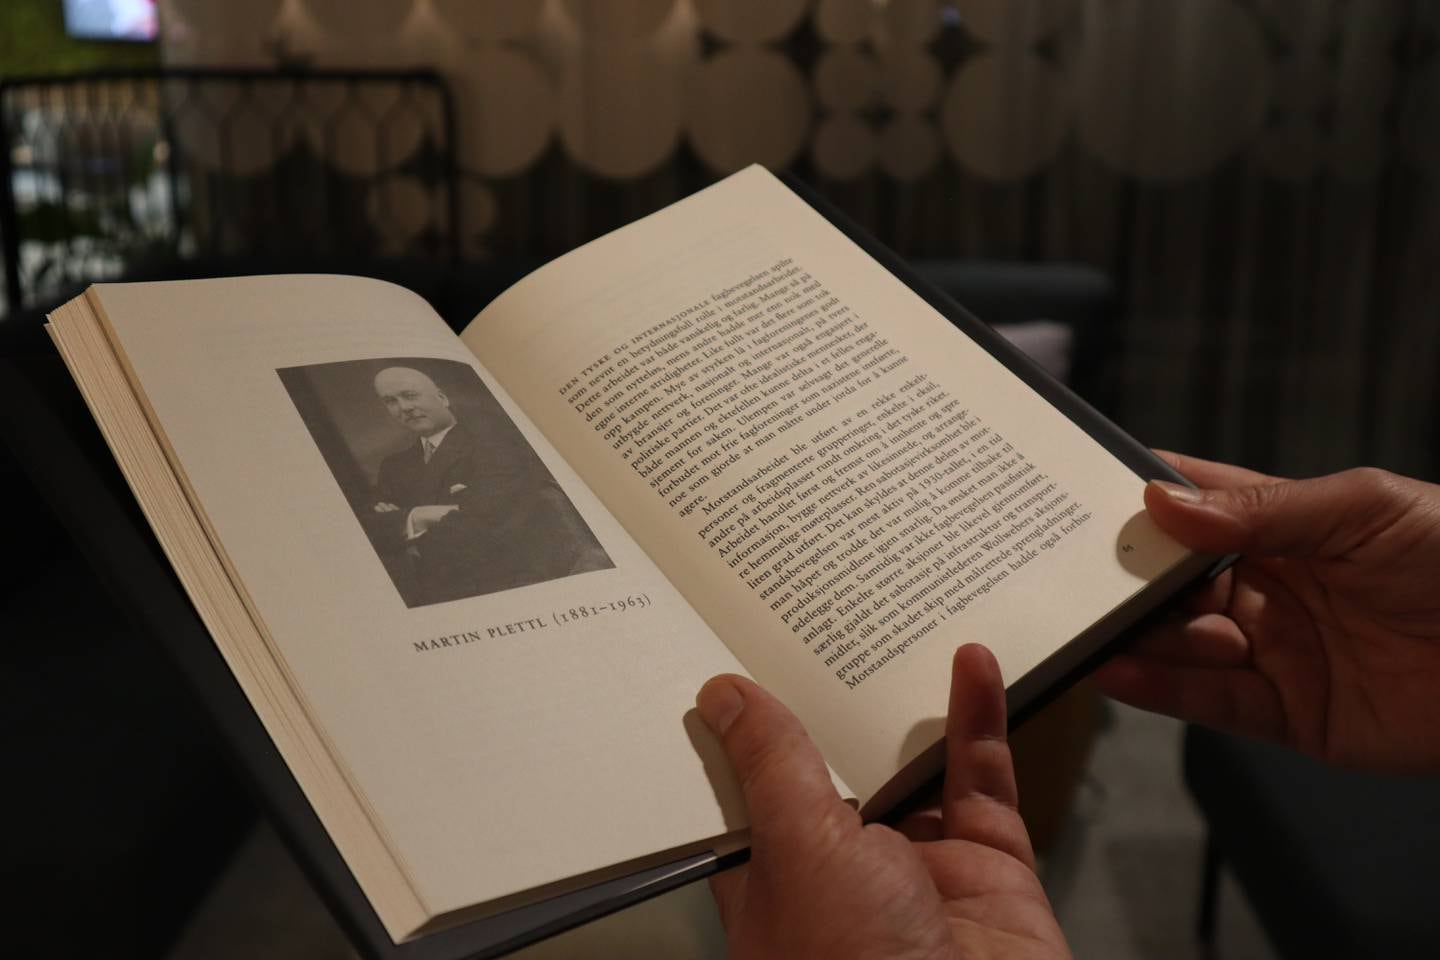 Boken "De motvillige" er åpnet på siden om Martin Plettl, i hendene på Kristian Ilner.